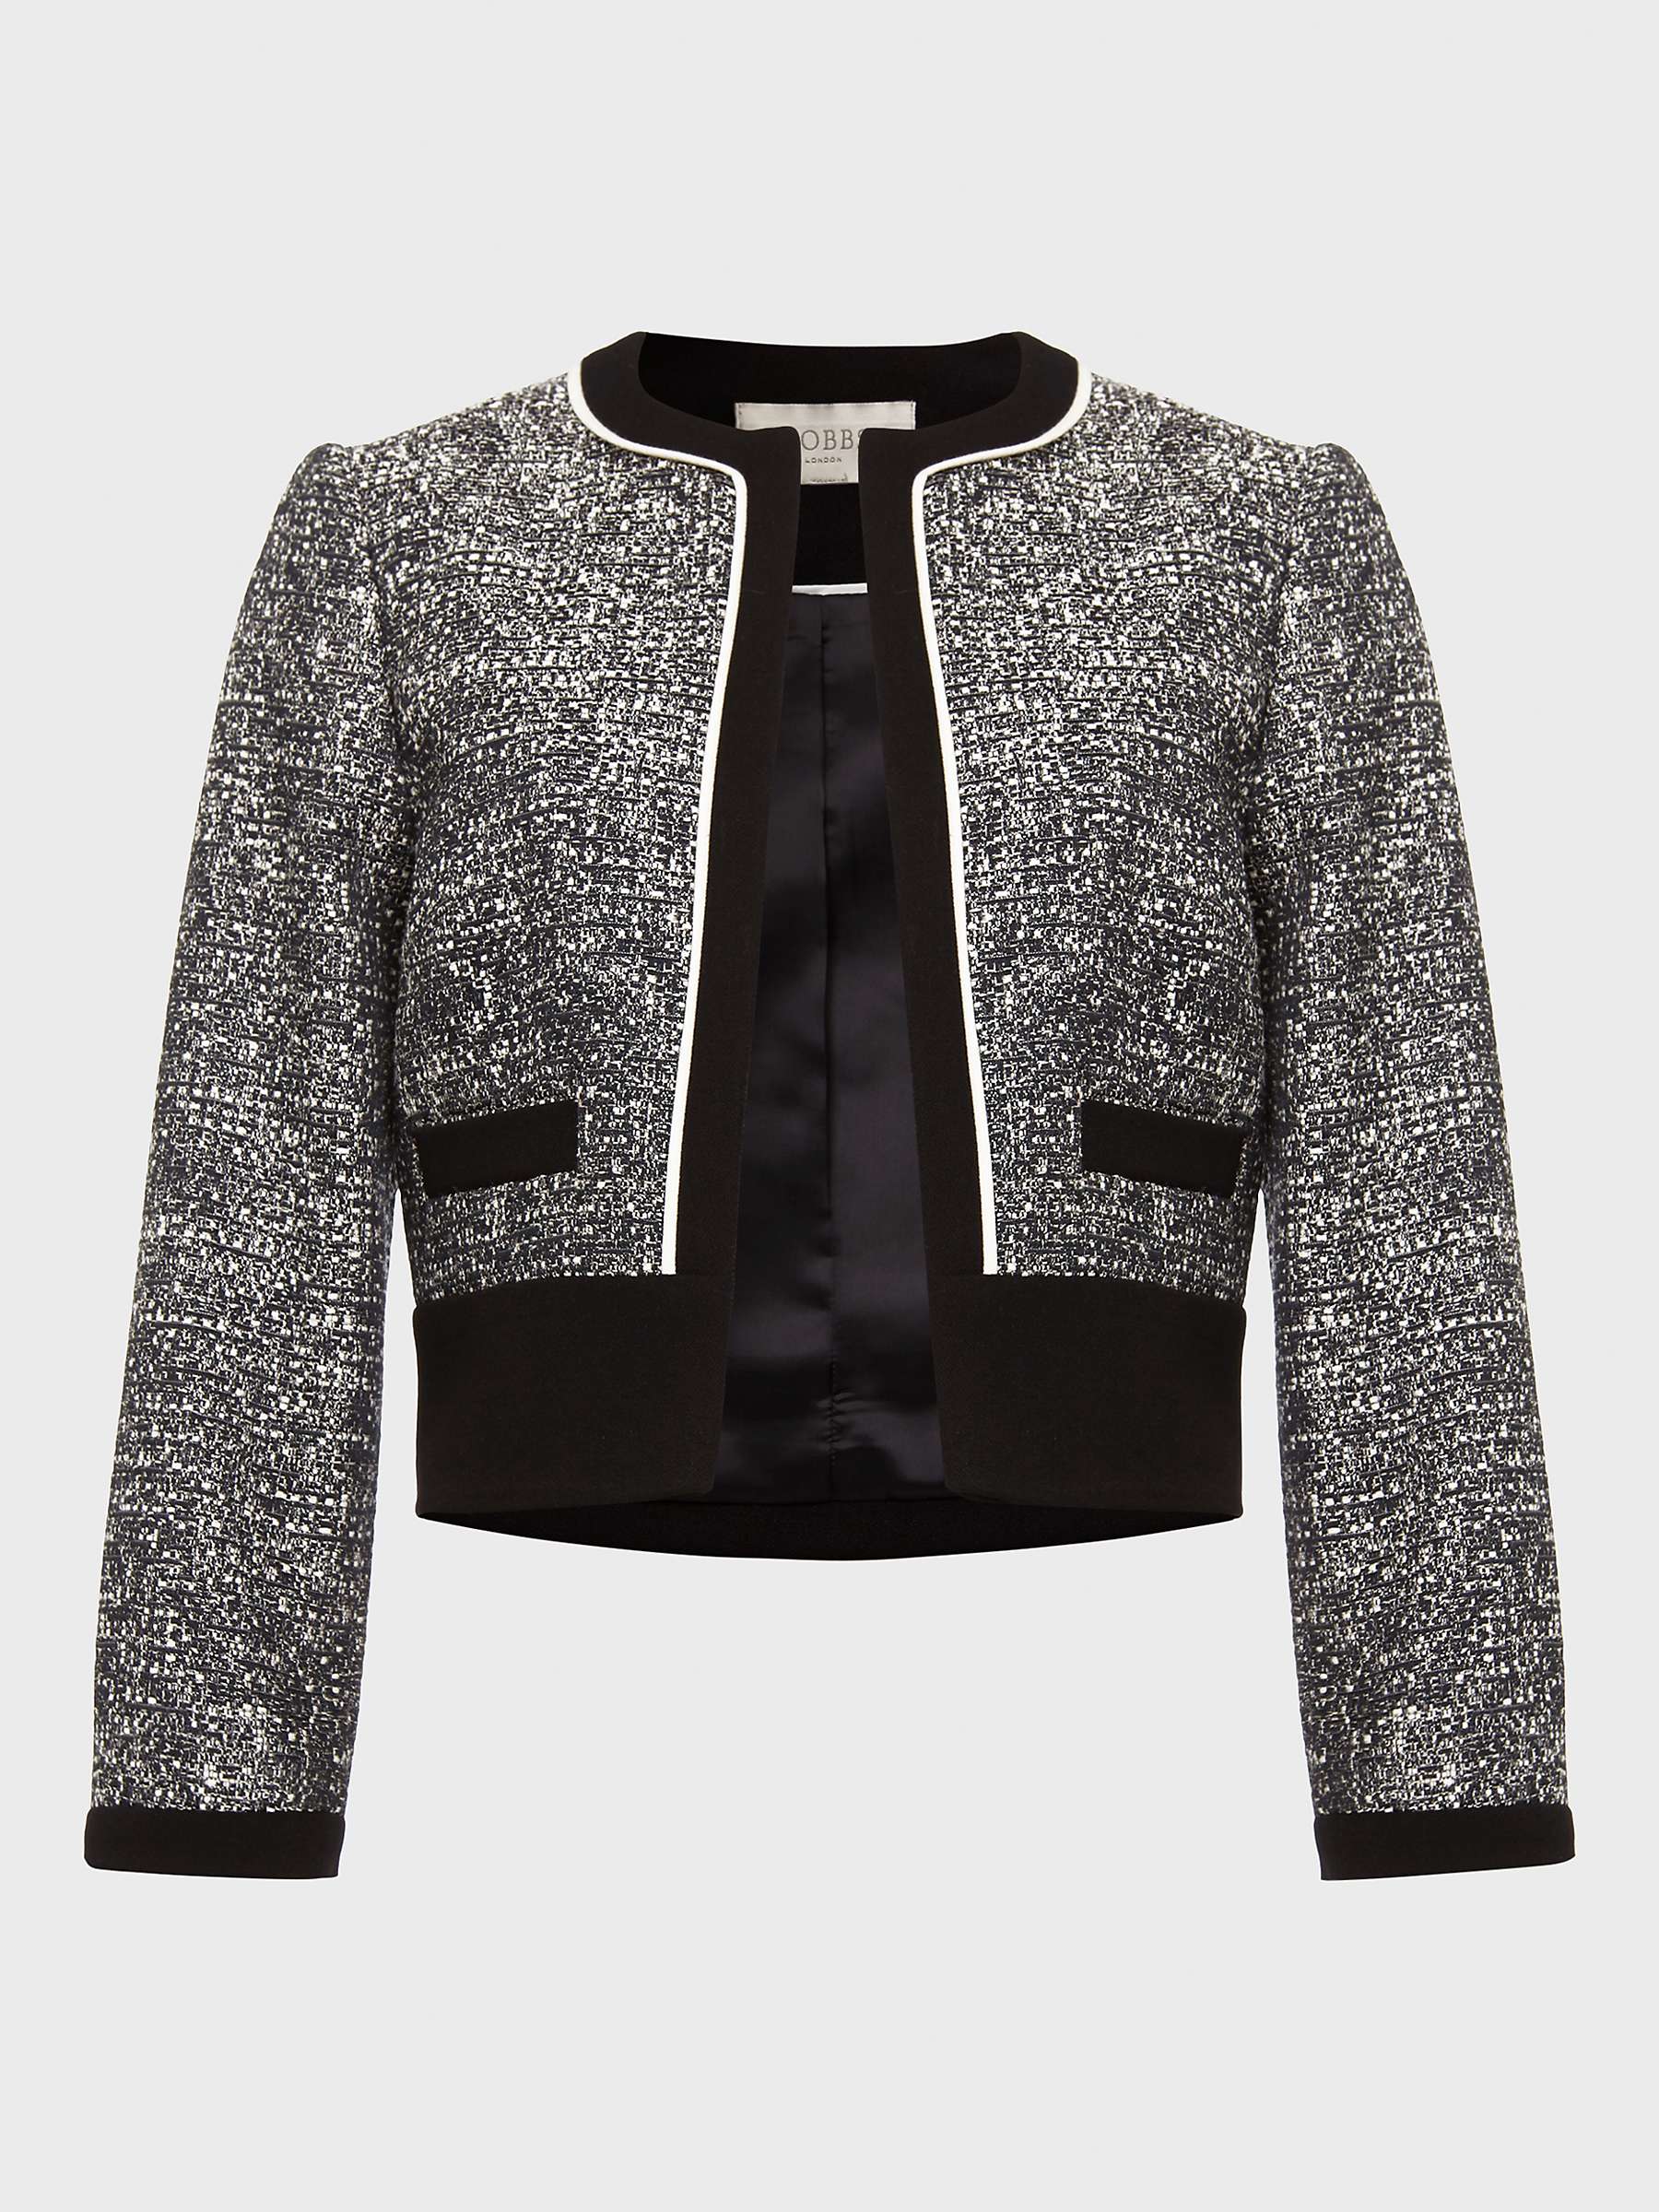 Buy Hobbs Petite Brienna Tweed Jacket, Black/Ivory Online at johnlewis.com